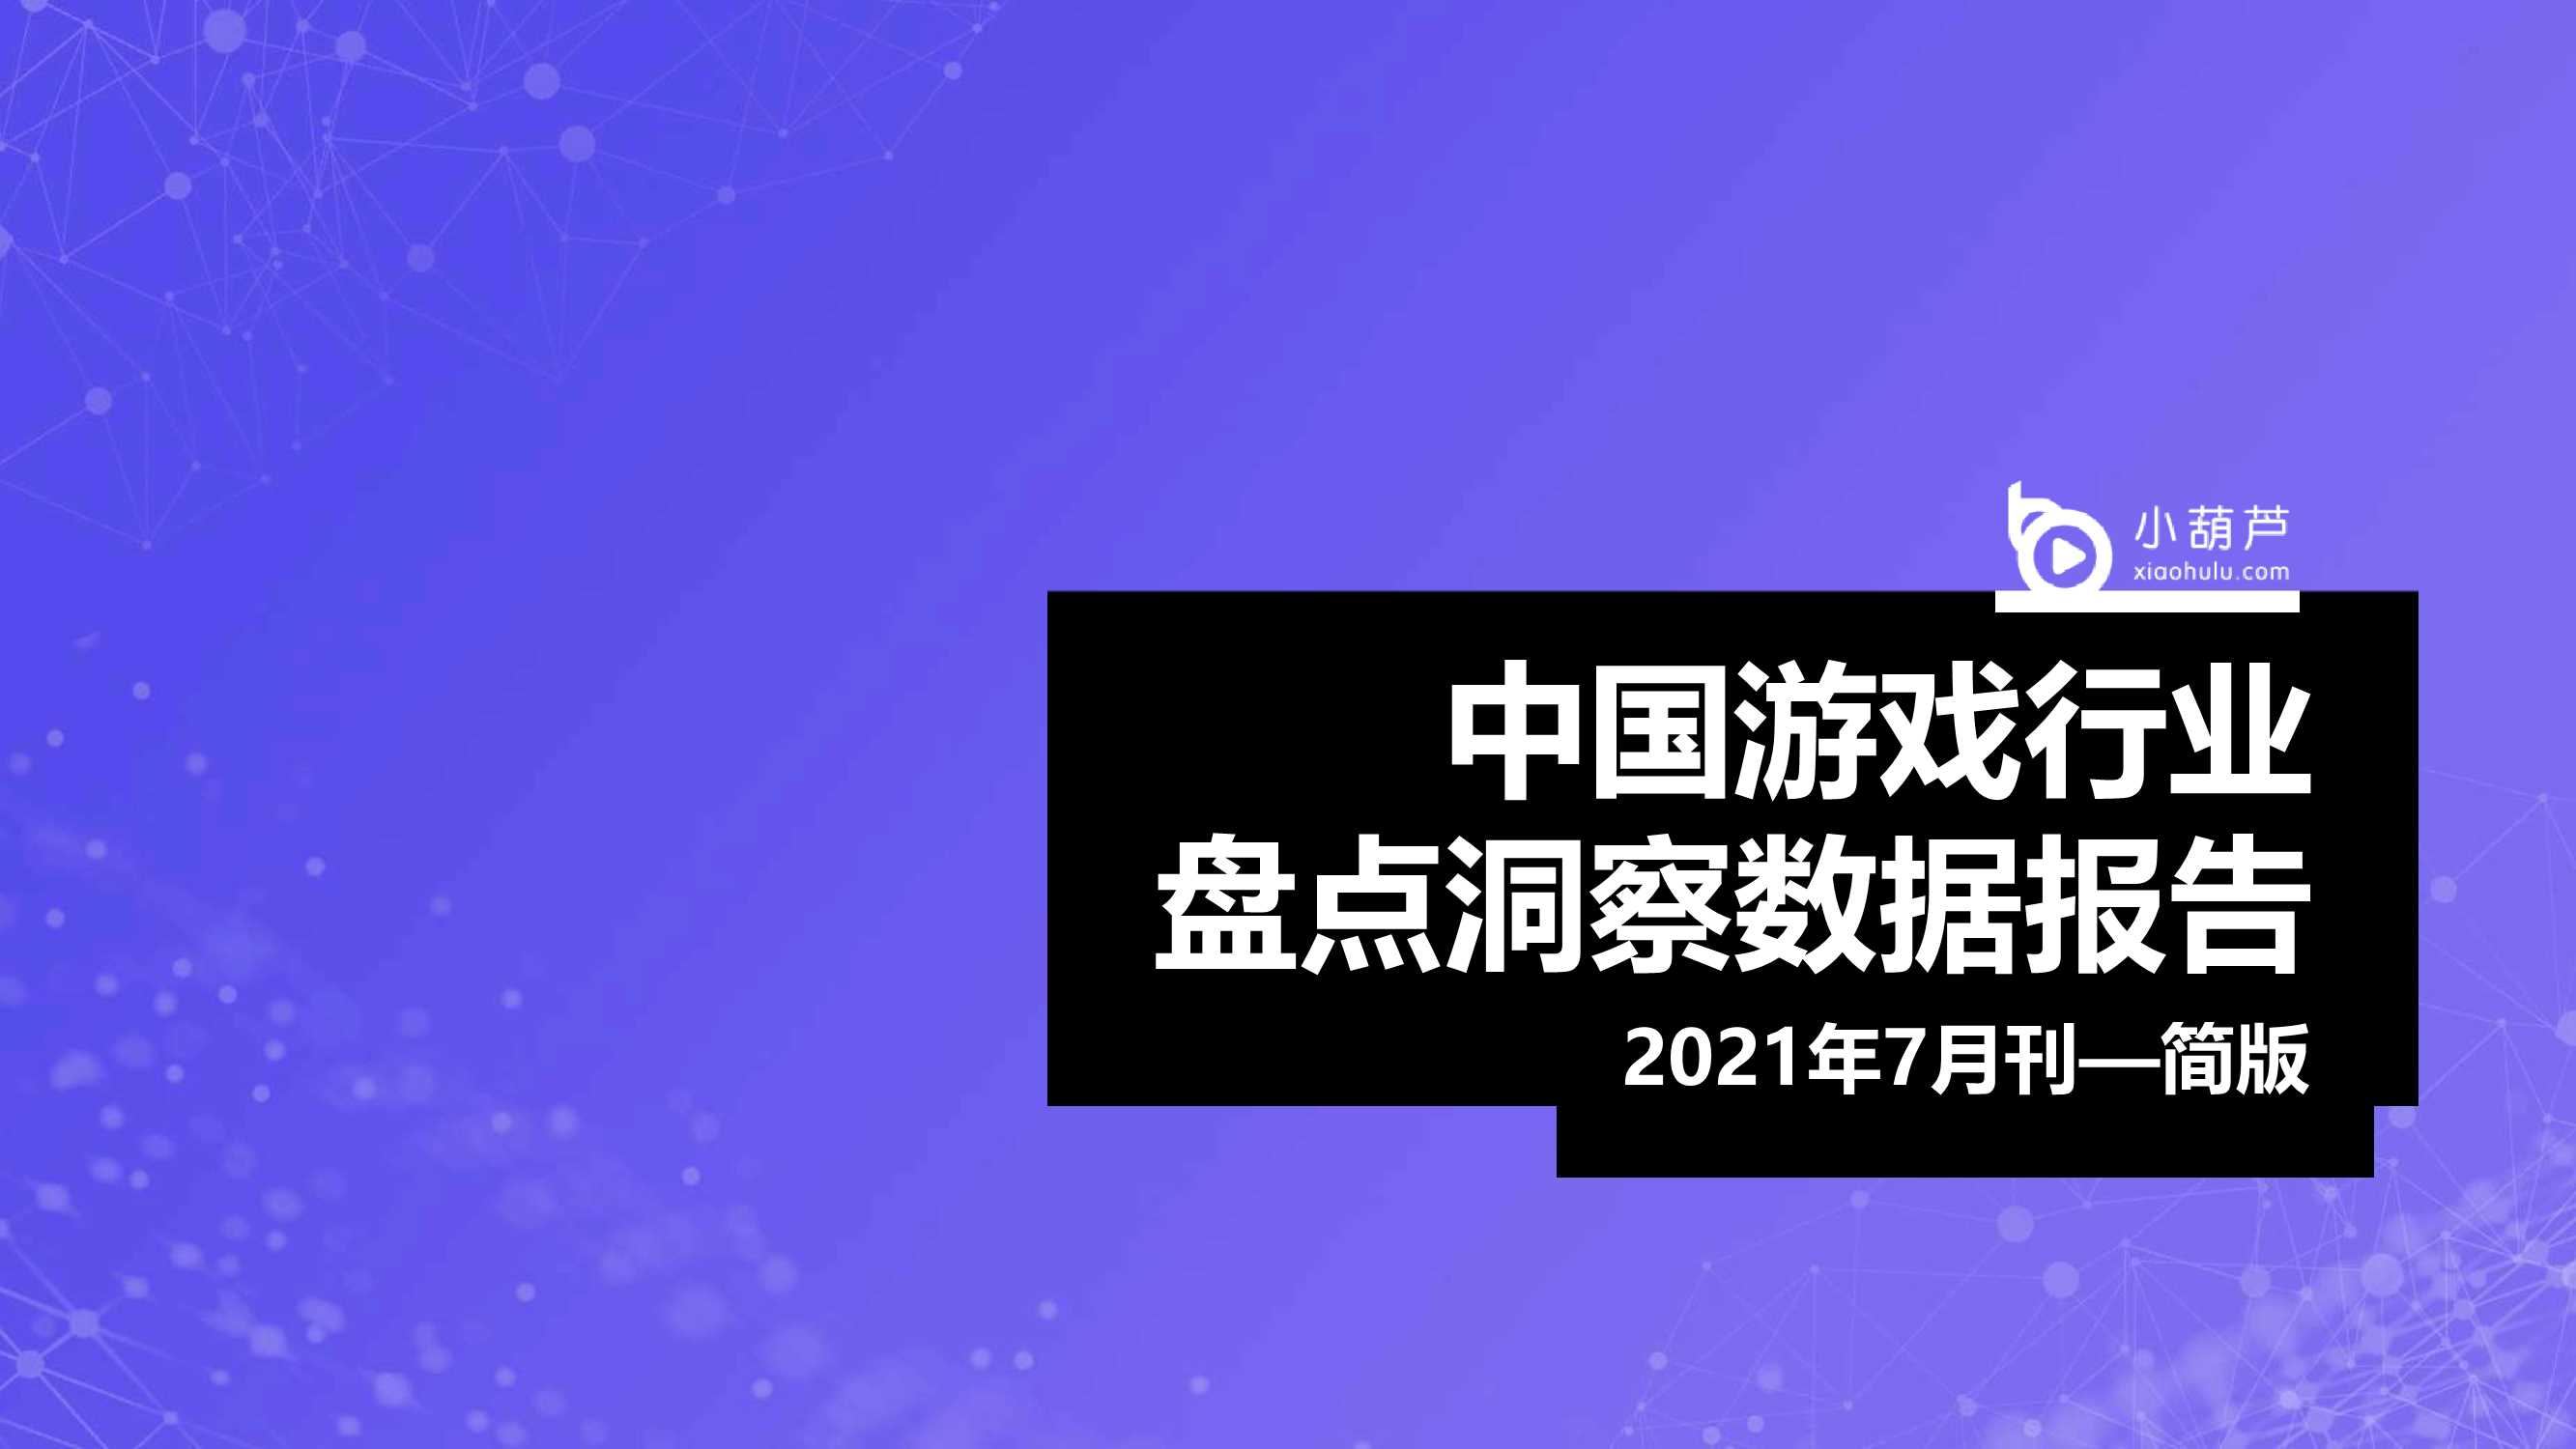 2021年7月中国游戏行业盘点洞察数据简版报告-2021.09-34页